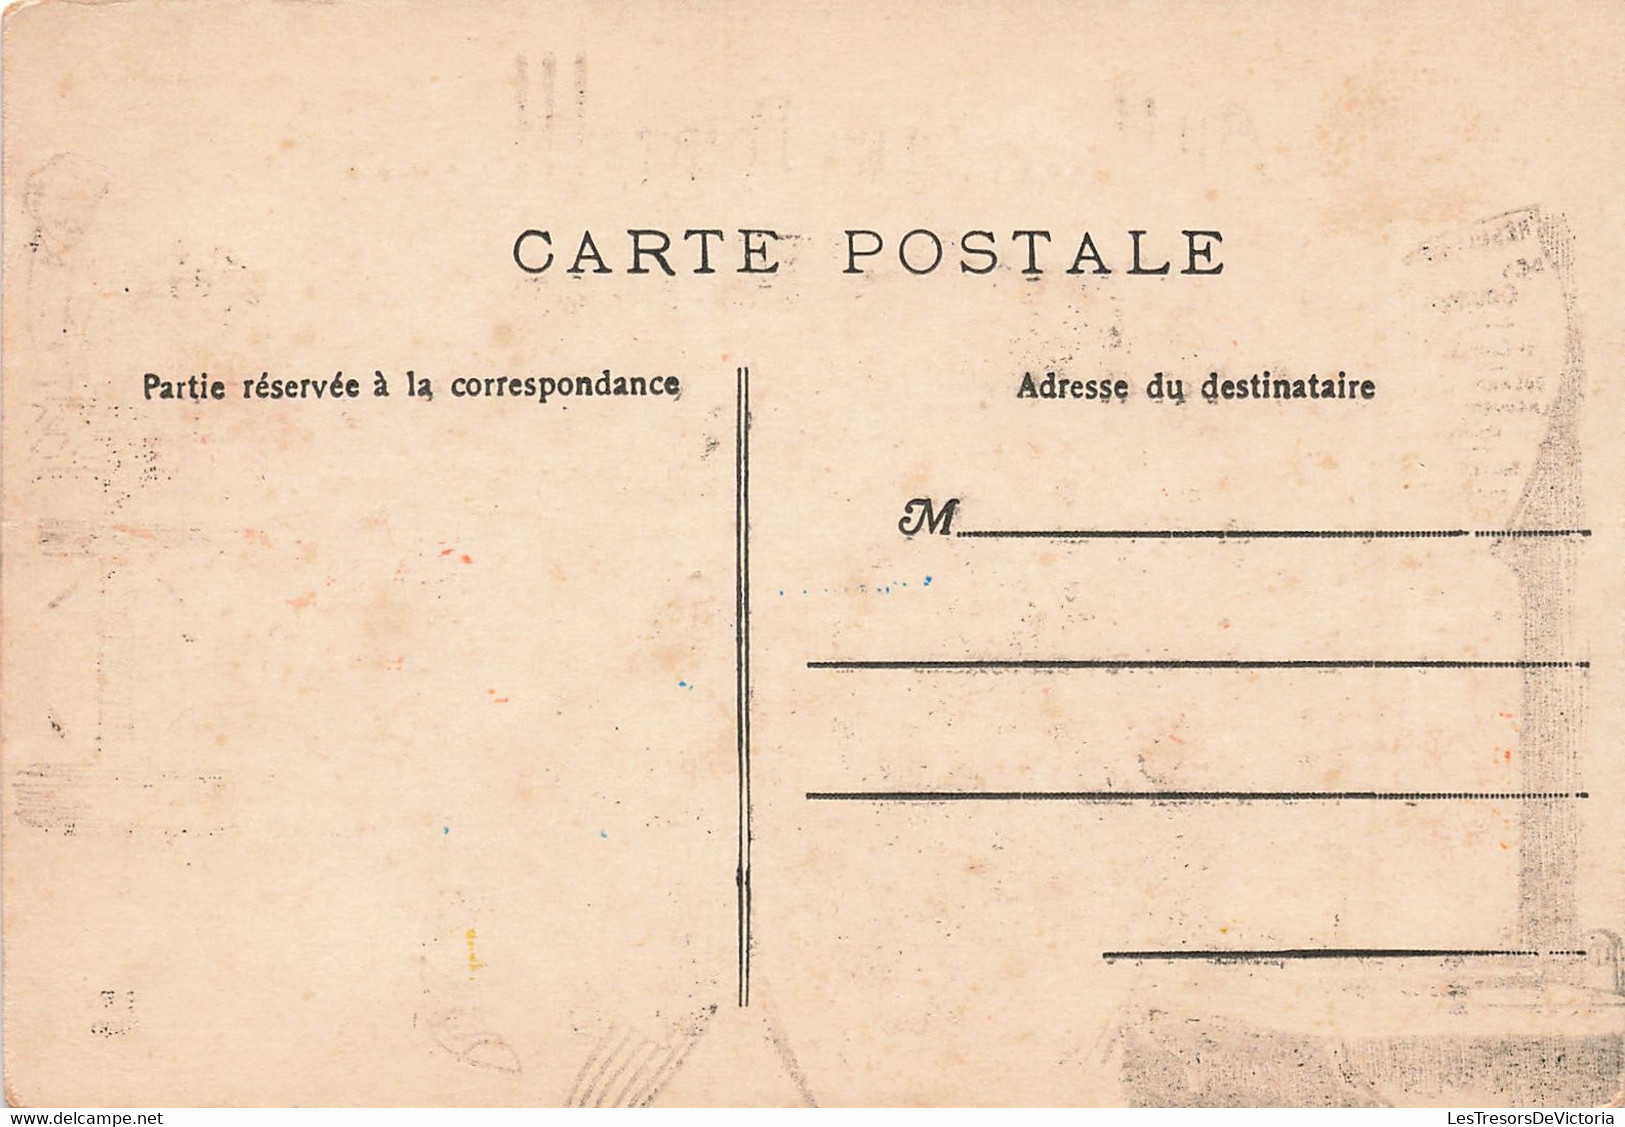 Fantaisies - Ah Les Poires - Humour - Ph. Norwing - Parieur - Pari - Carte Postale Ancienne - Männer